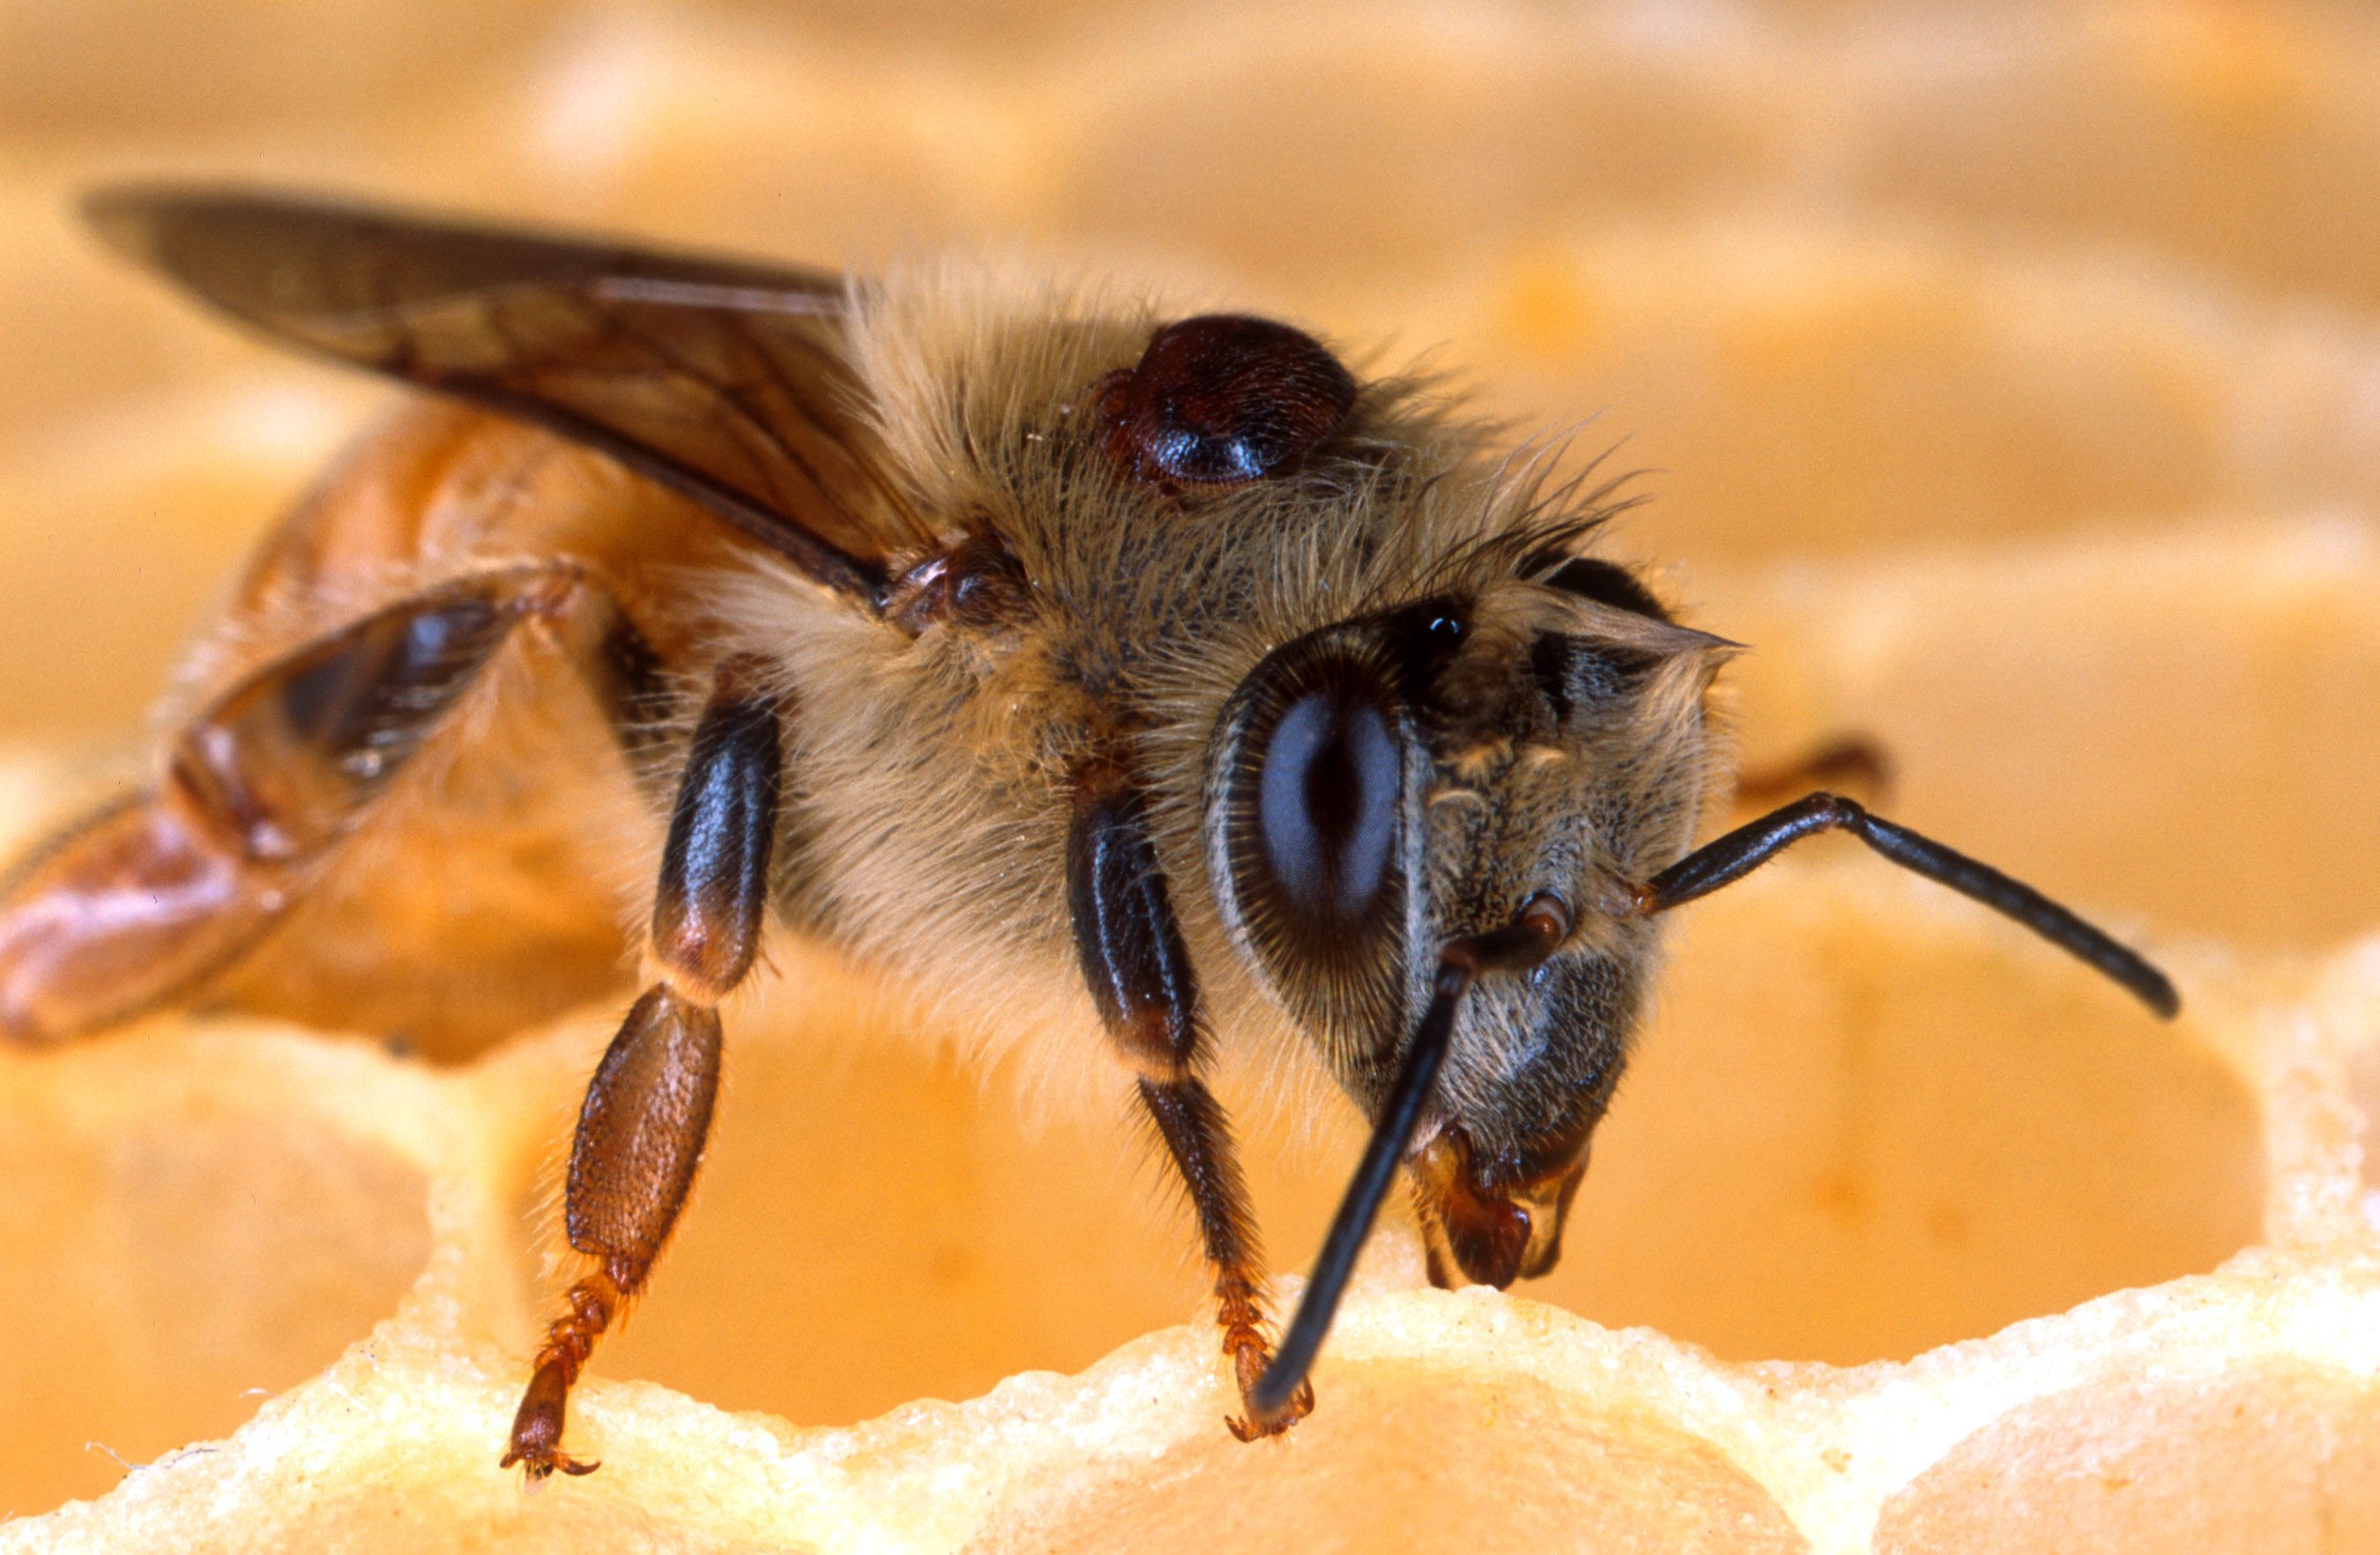 Honey bee with a Varroa mite